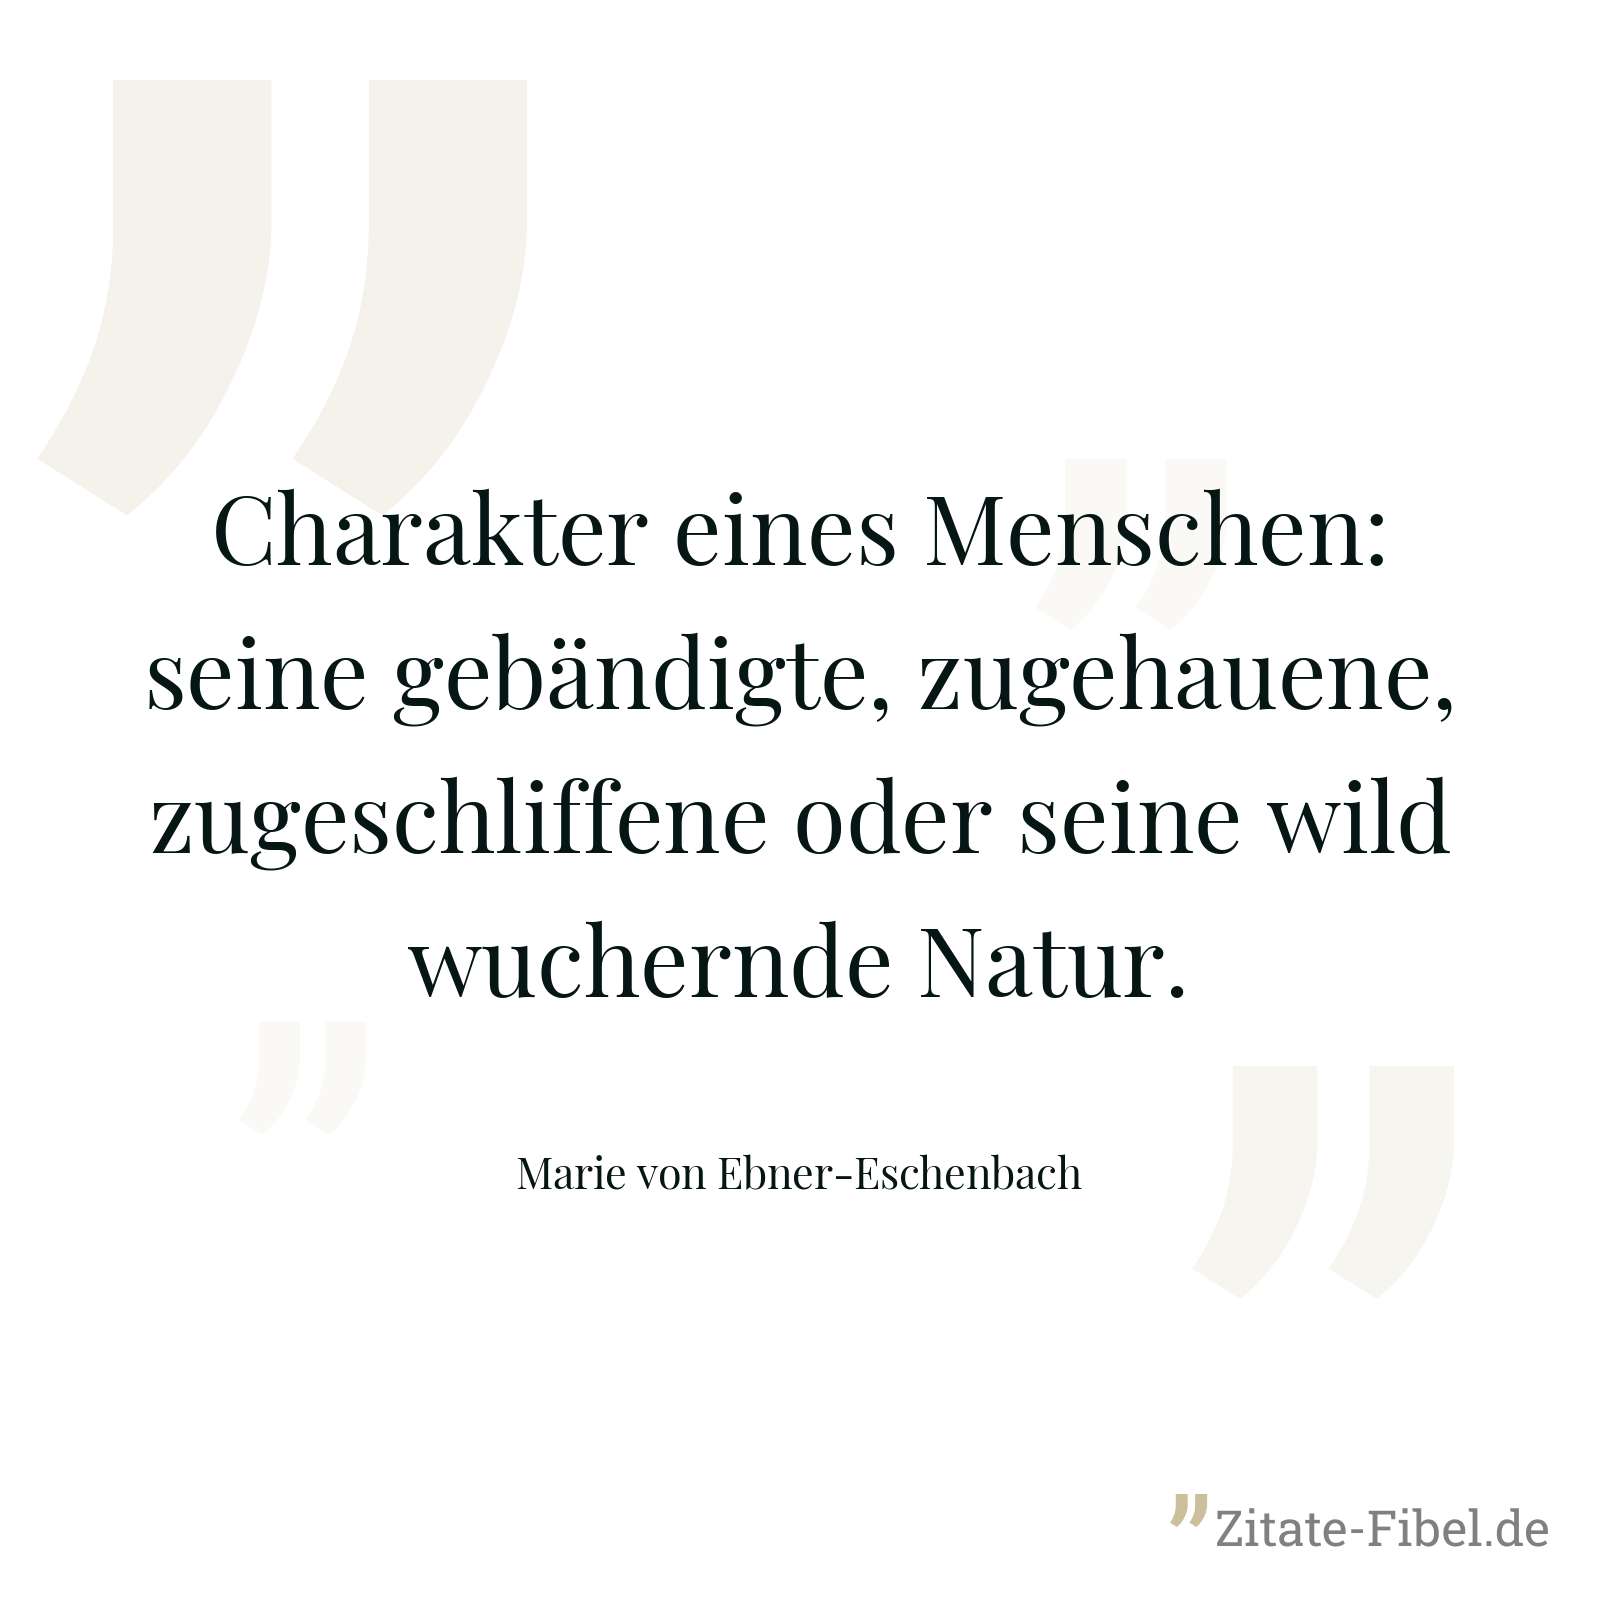 Charakter eines Menschen: seine gebändigte, zugehauene, zugeschliffene oder seine wild wuchernde Natur. - Marie von Ebner-Eschenbach